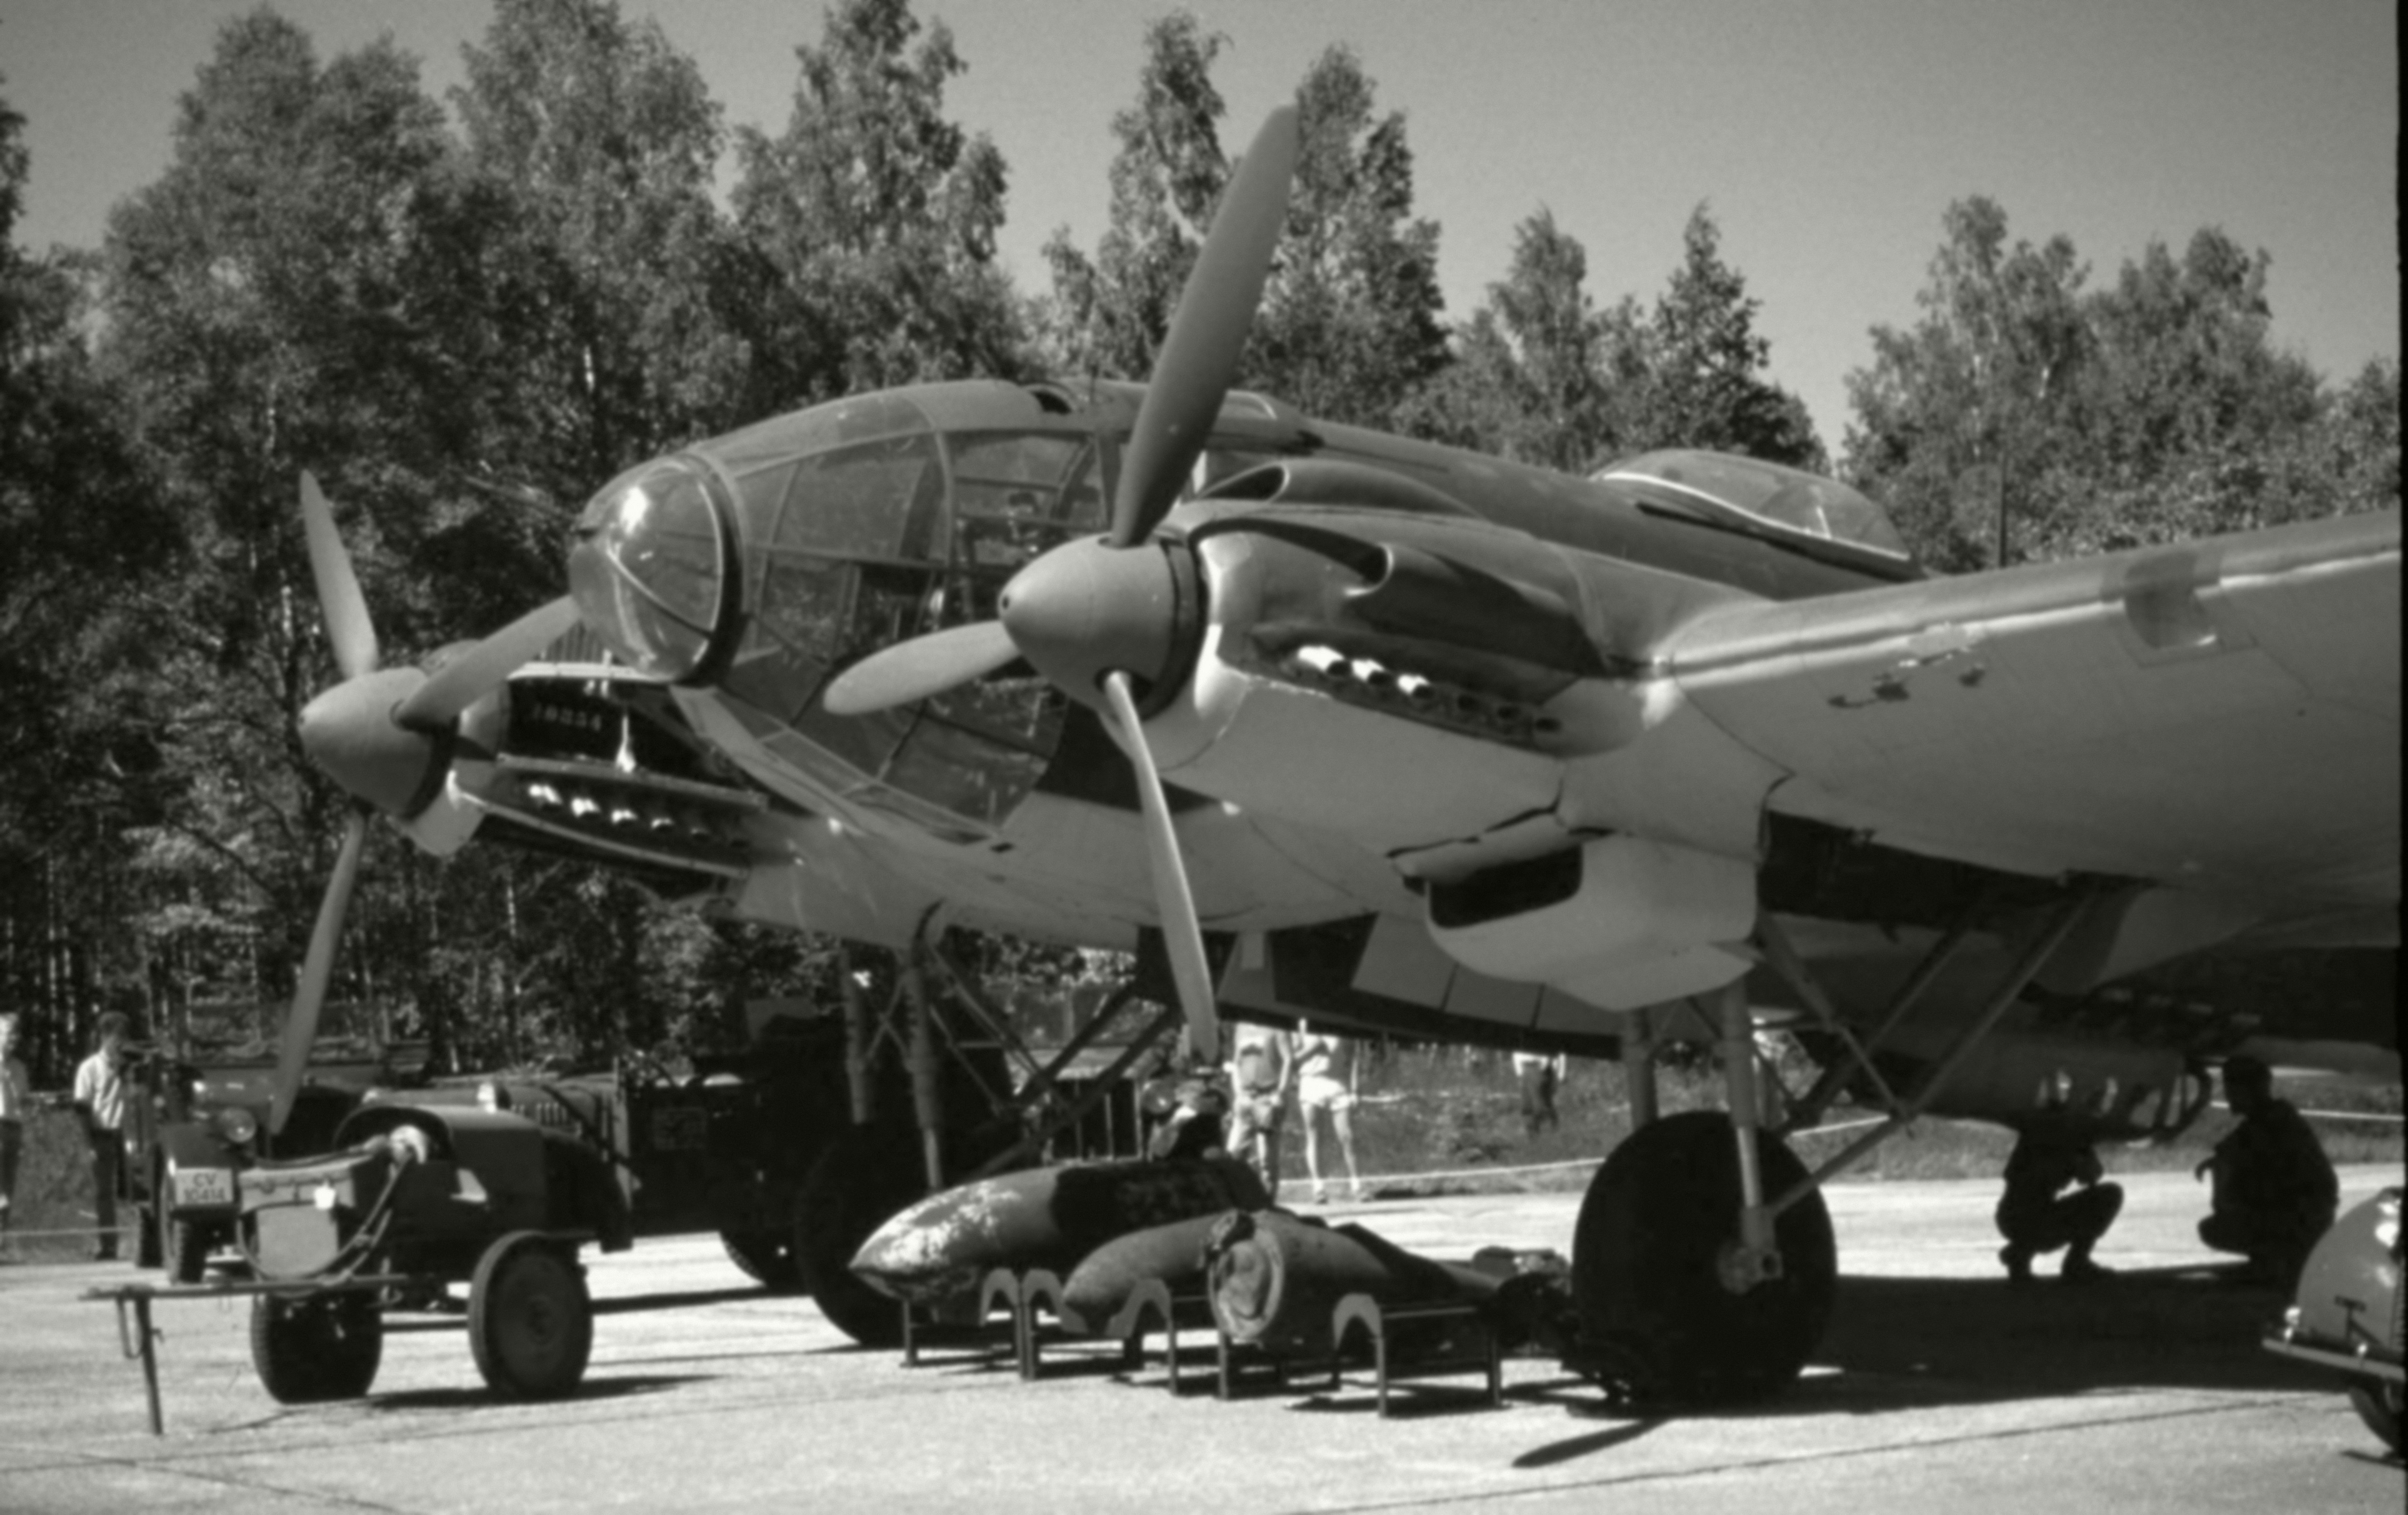 Хейнкель He 111 без смс